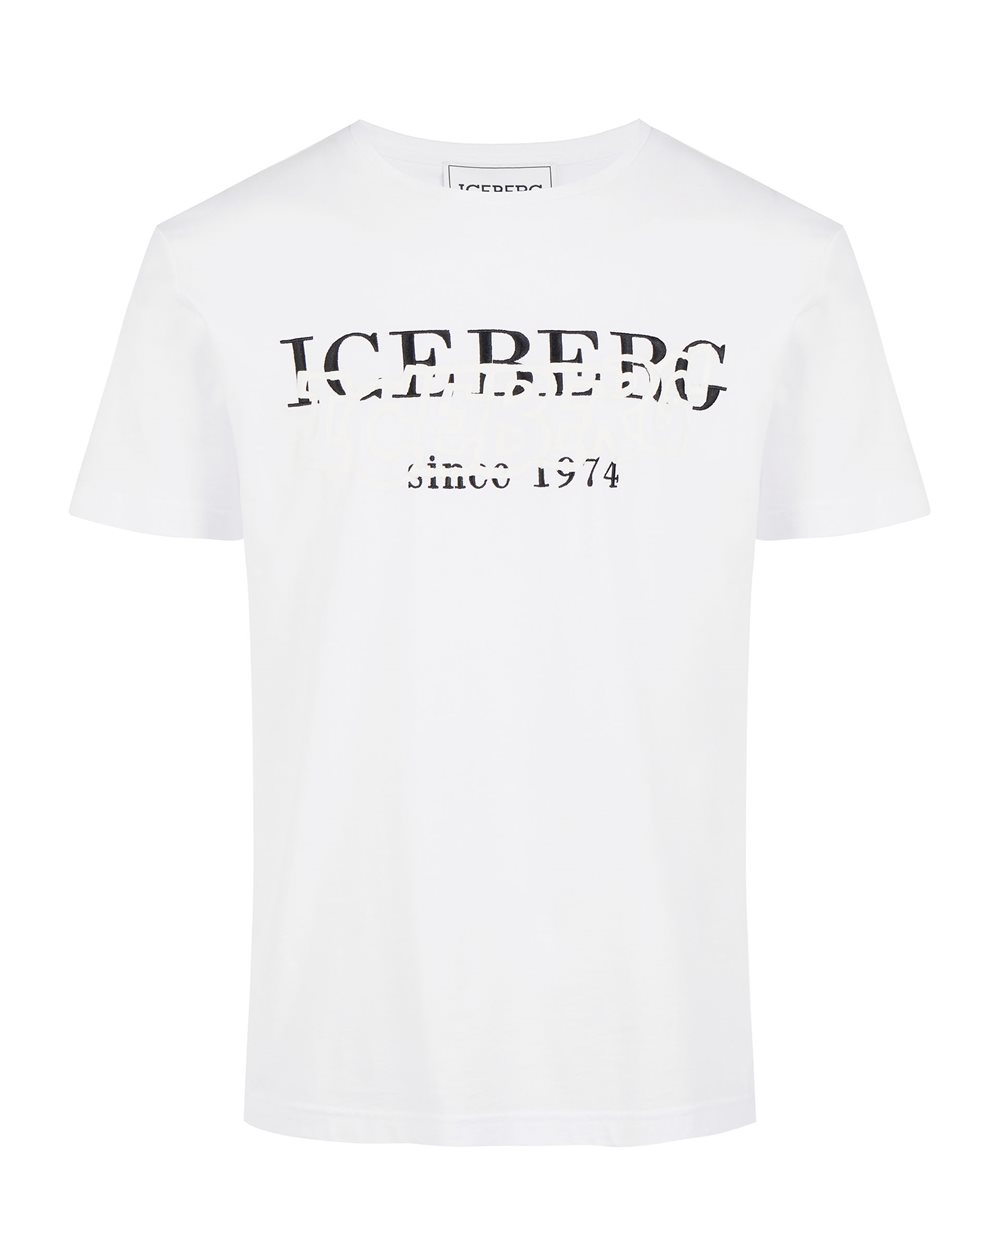 White T-shirt with Iceberg